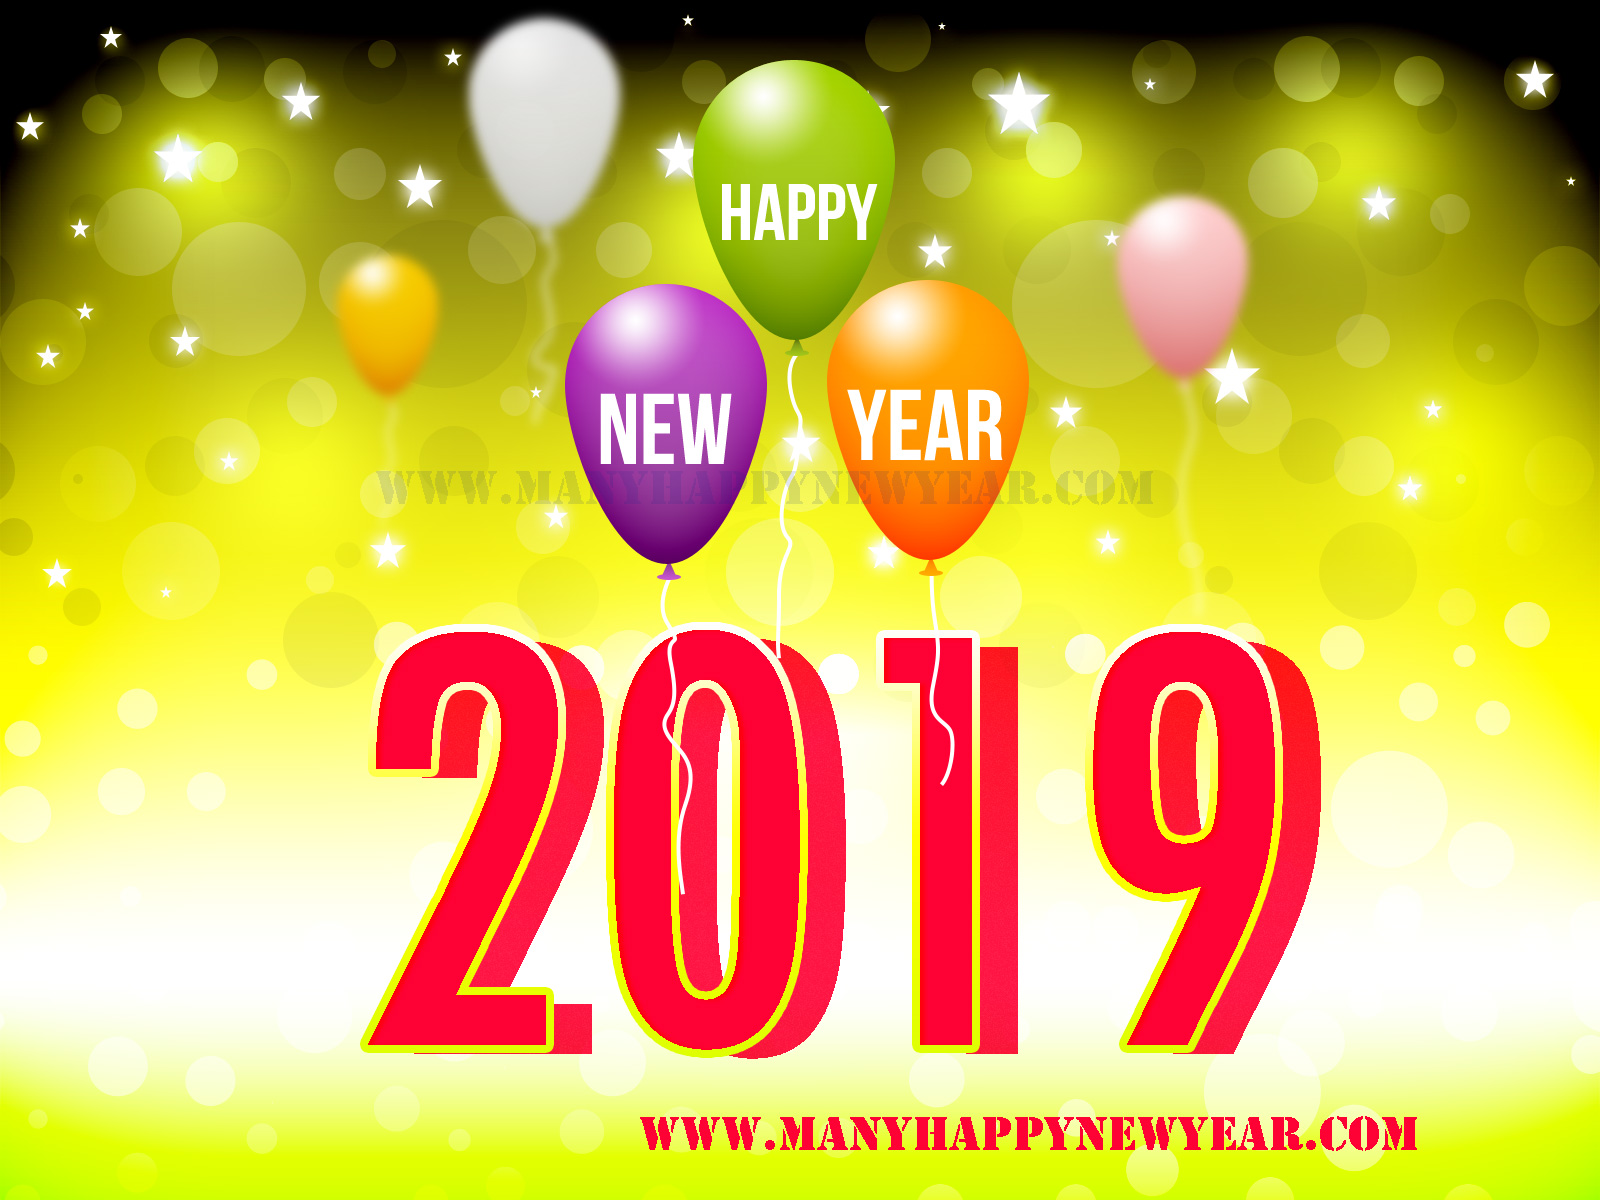 Happy New Year 2019 Images  Happy New Year 2019 Images